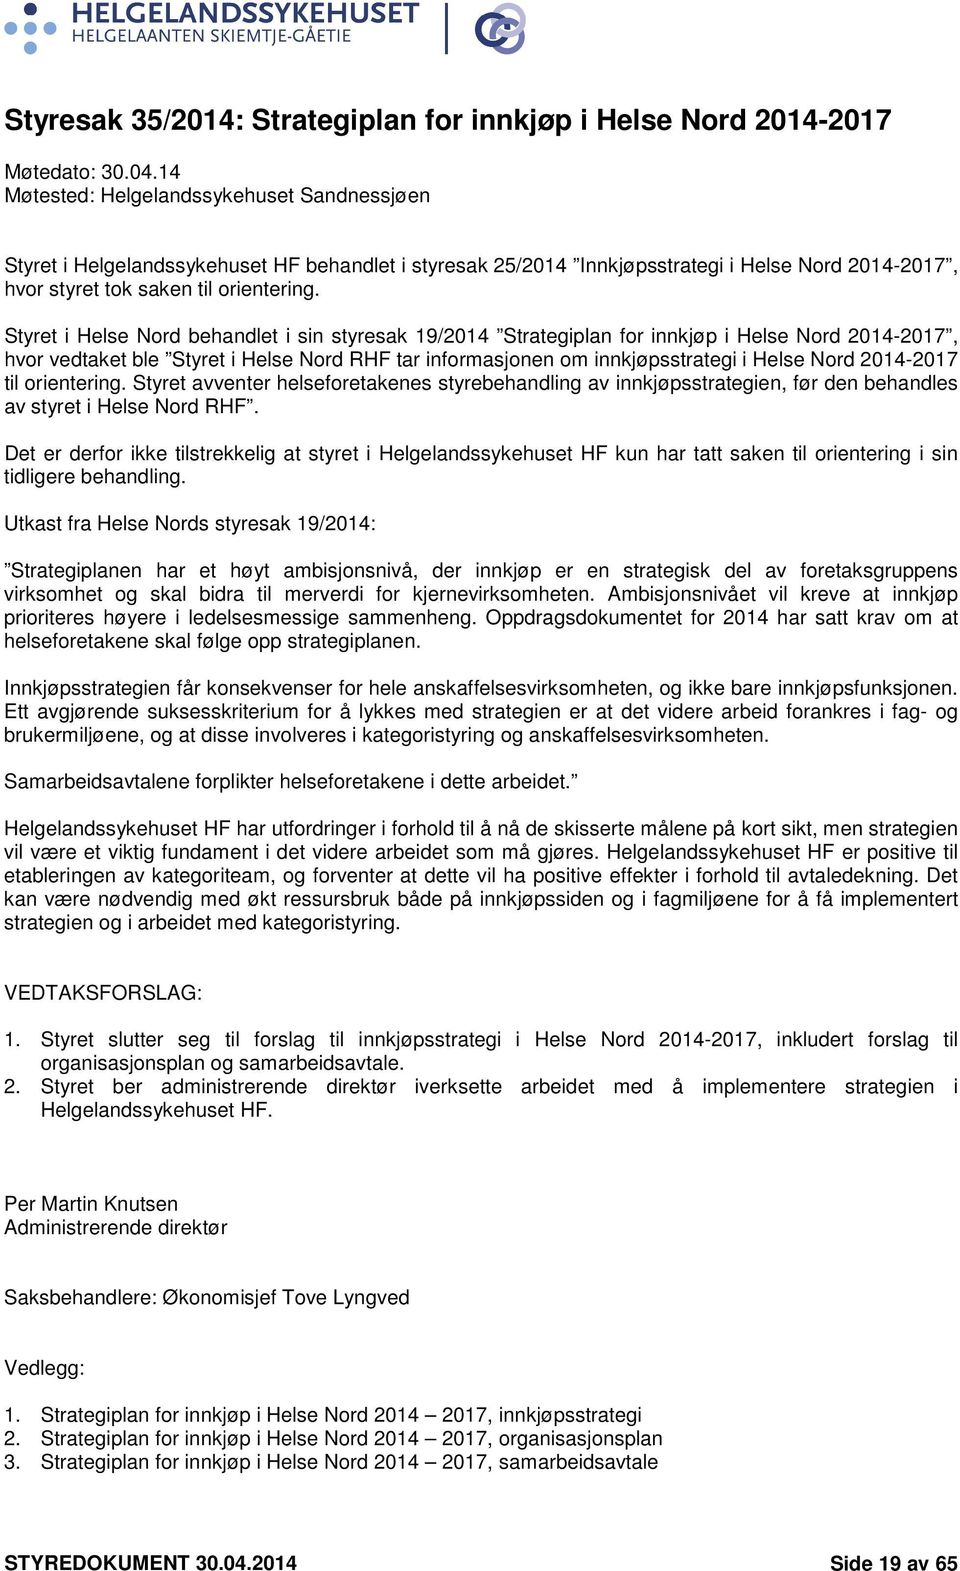 Styret i Helse Nord behandlet i sin styresak 19/2014 Strategiplan for innkjøp i Helse Nord 2014-2017, hvor vedtaket ble Styret i Helse Nord RHF tar informasjonen om innkjøpsstrategi i Helse Nord